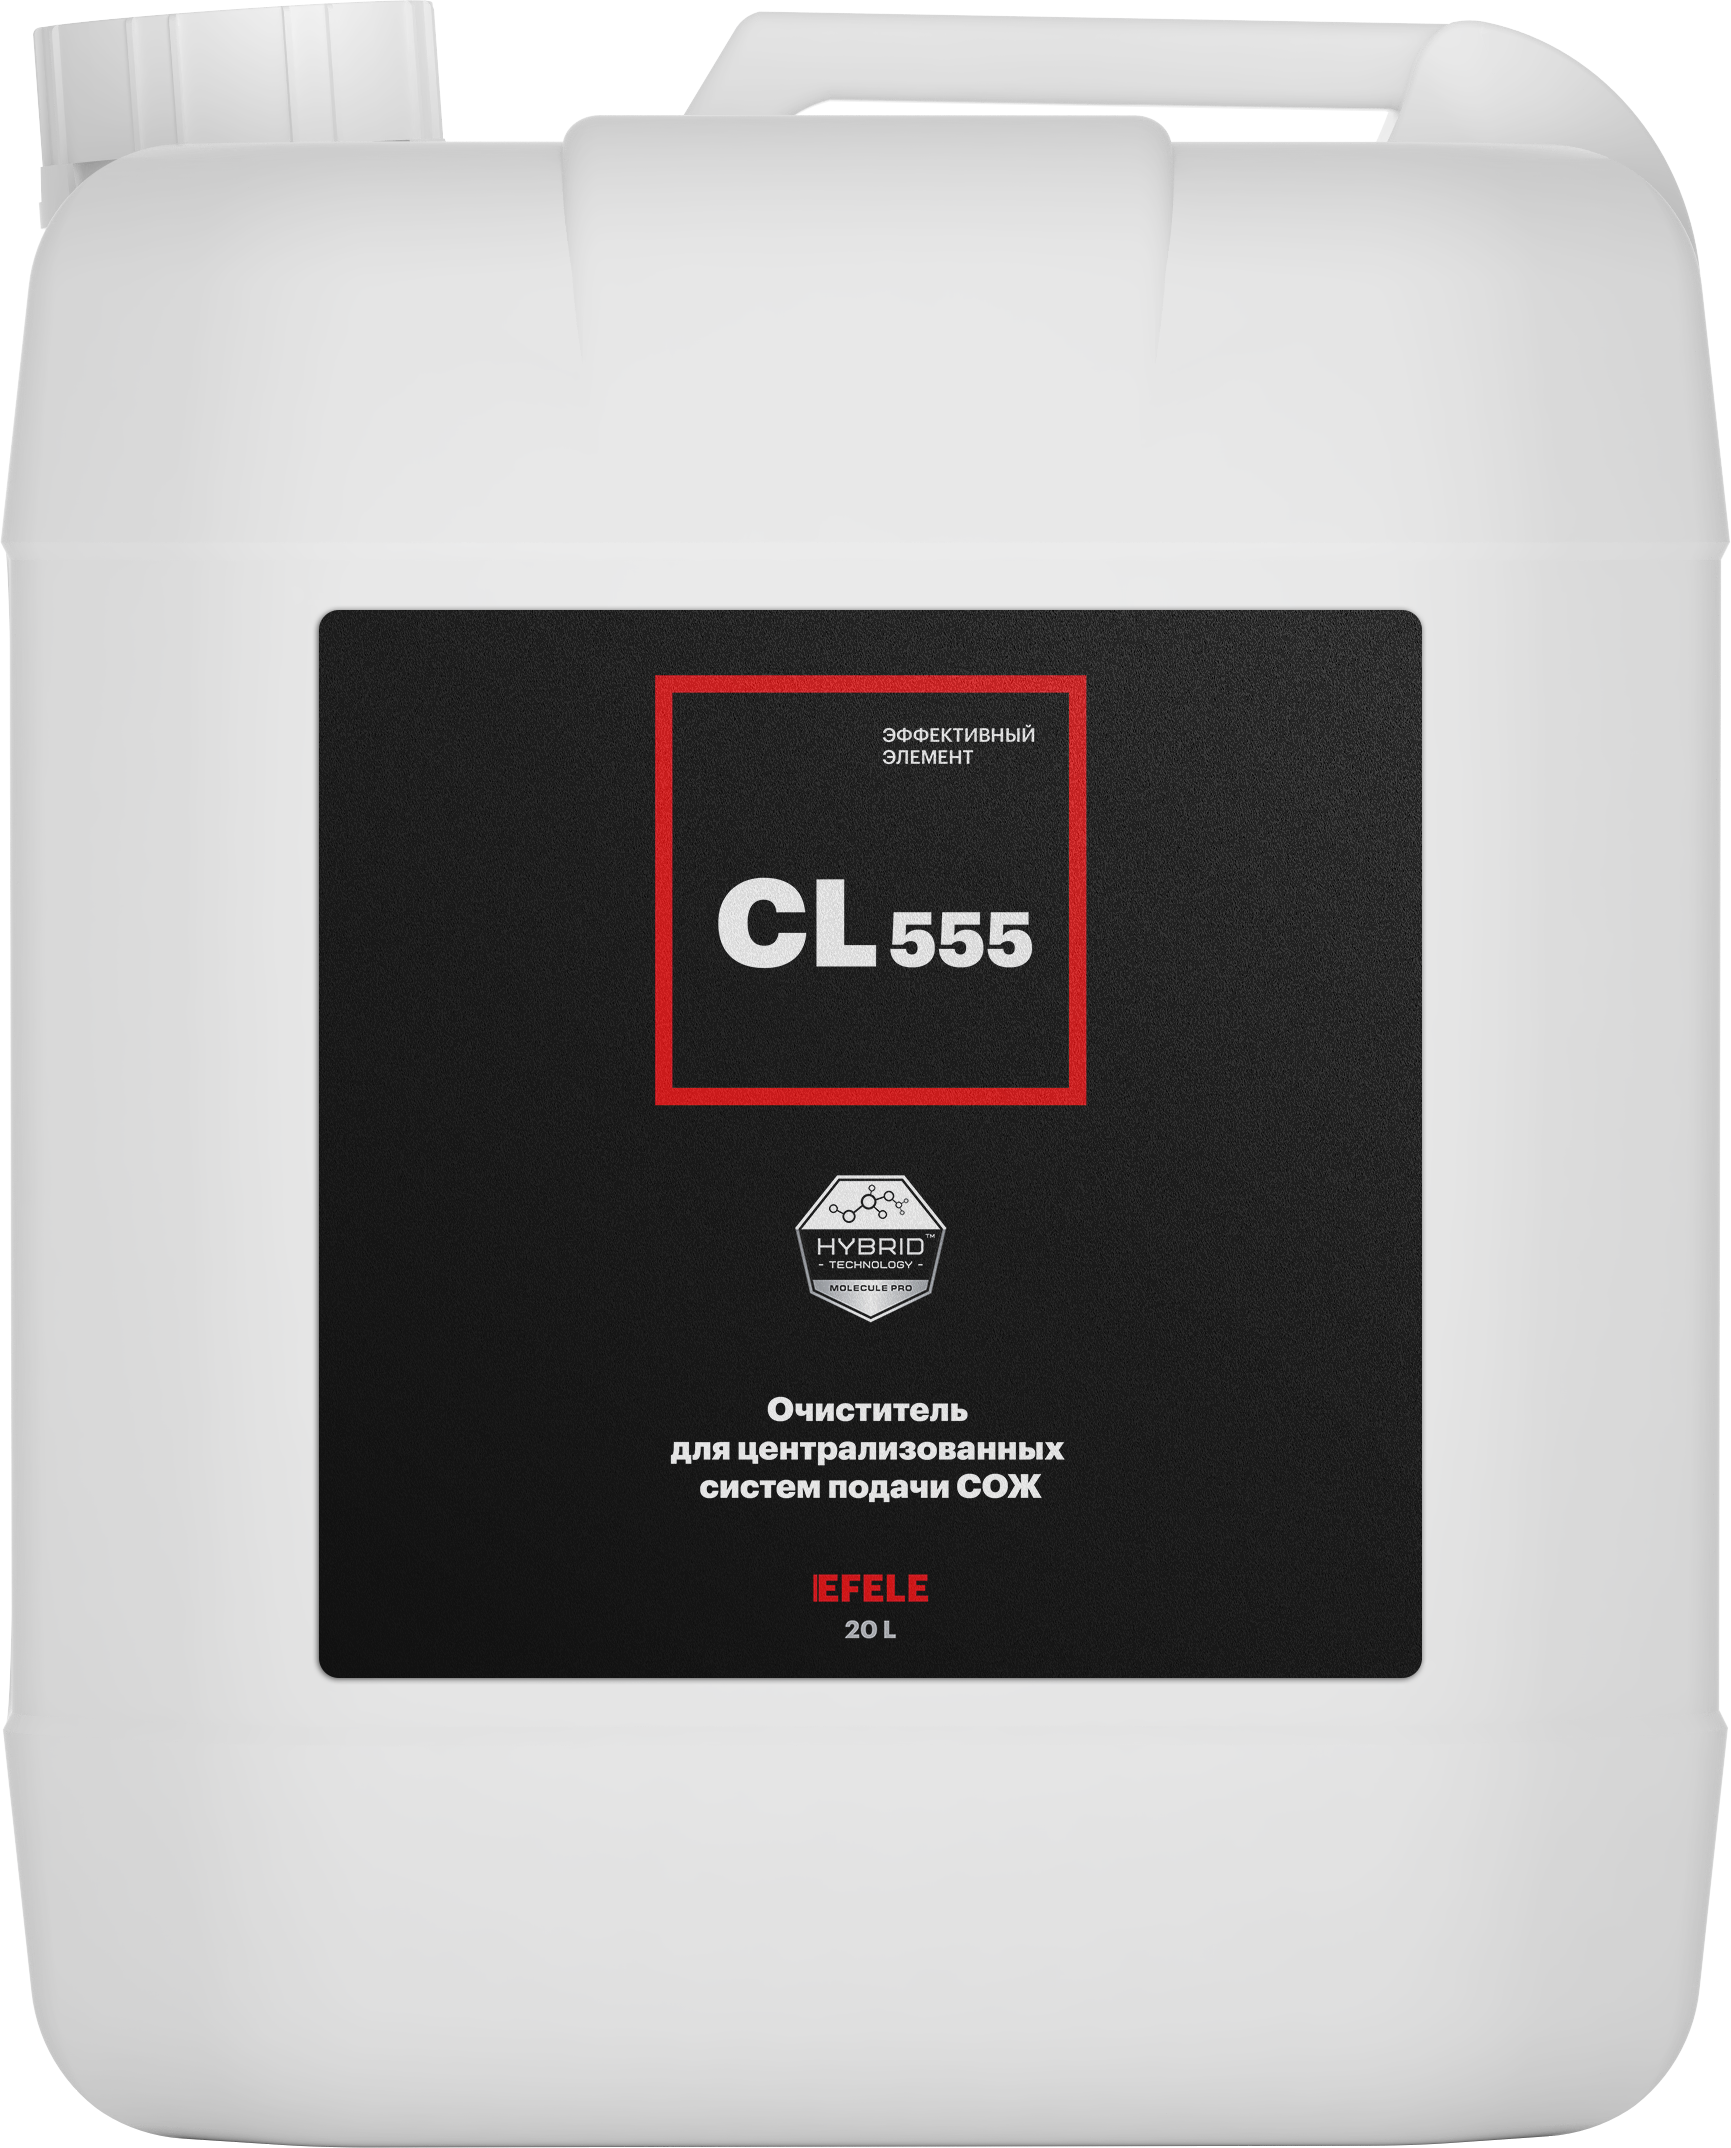  Очиститель для систем подачи СОЖ EFELE CL-555 (20 л)